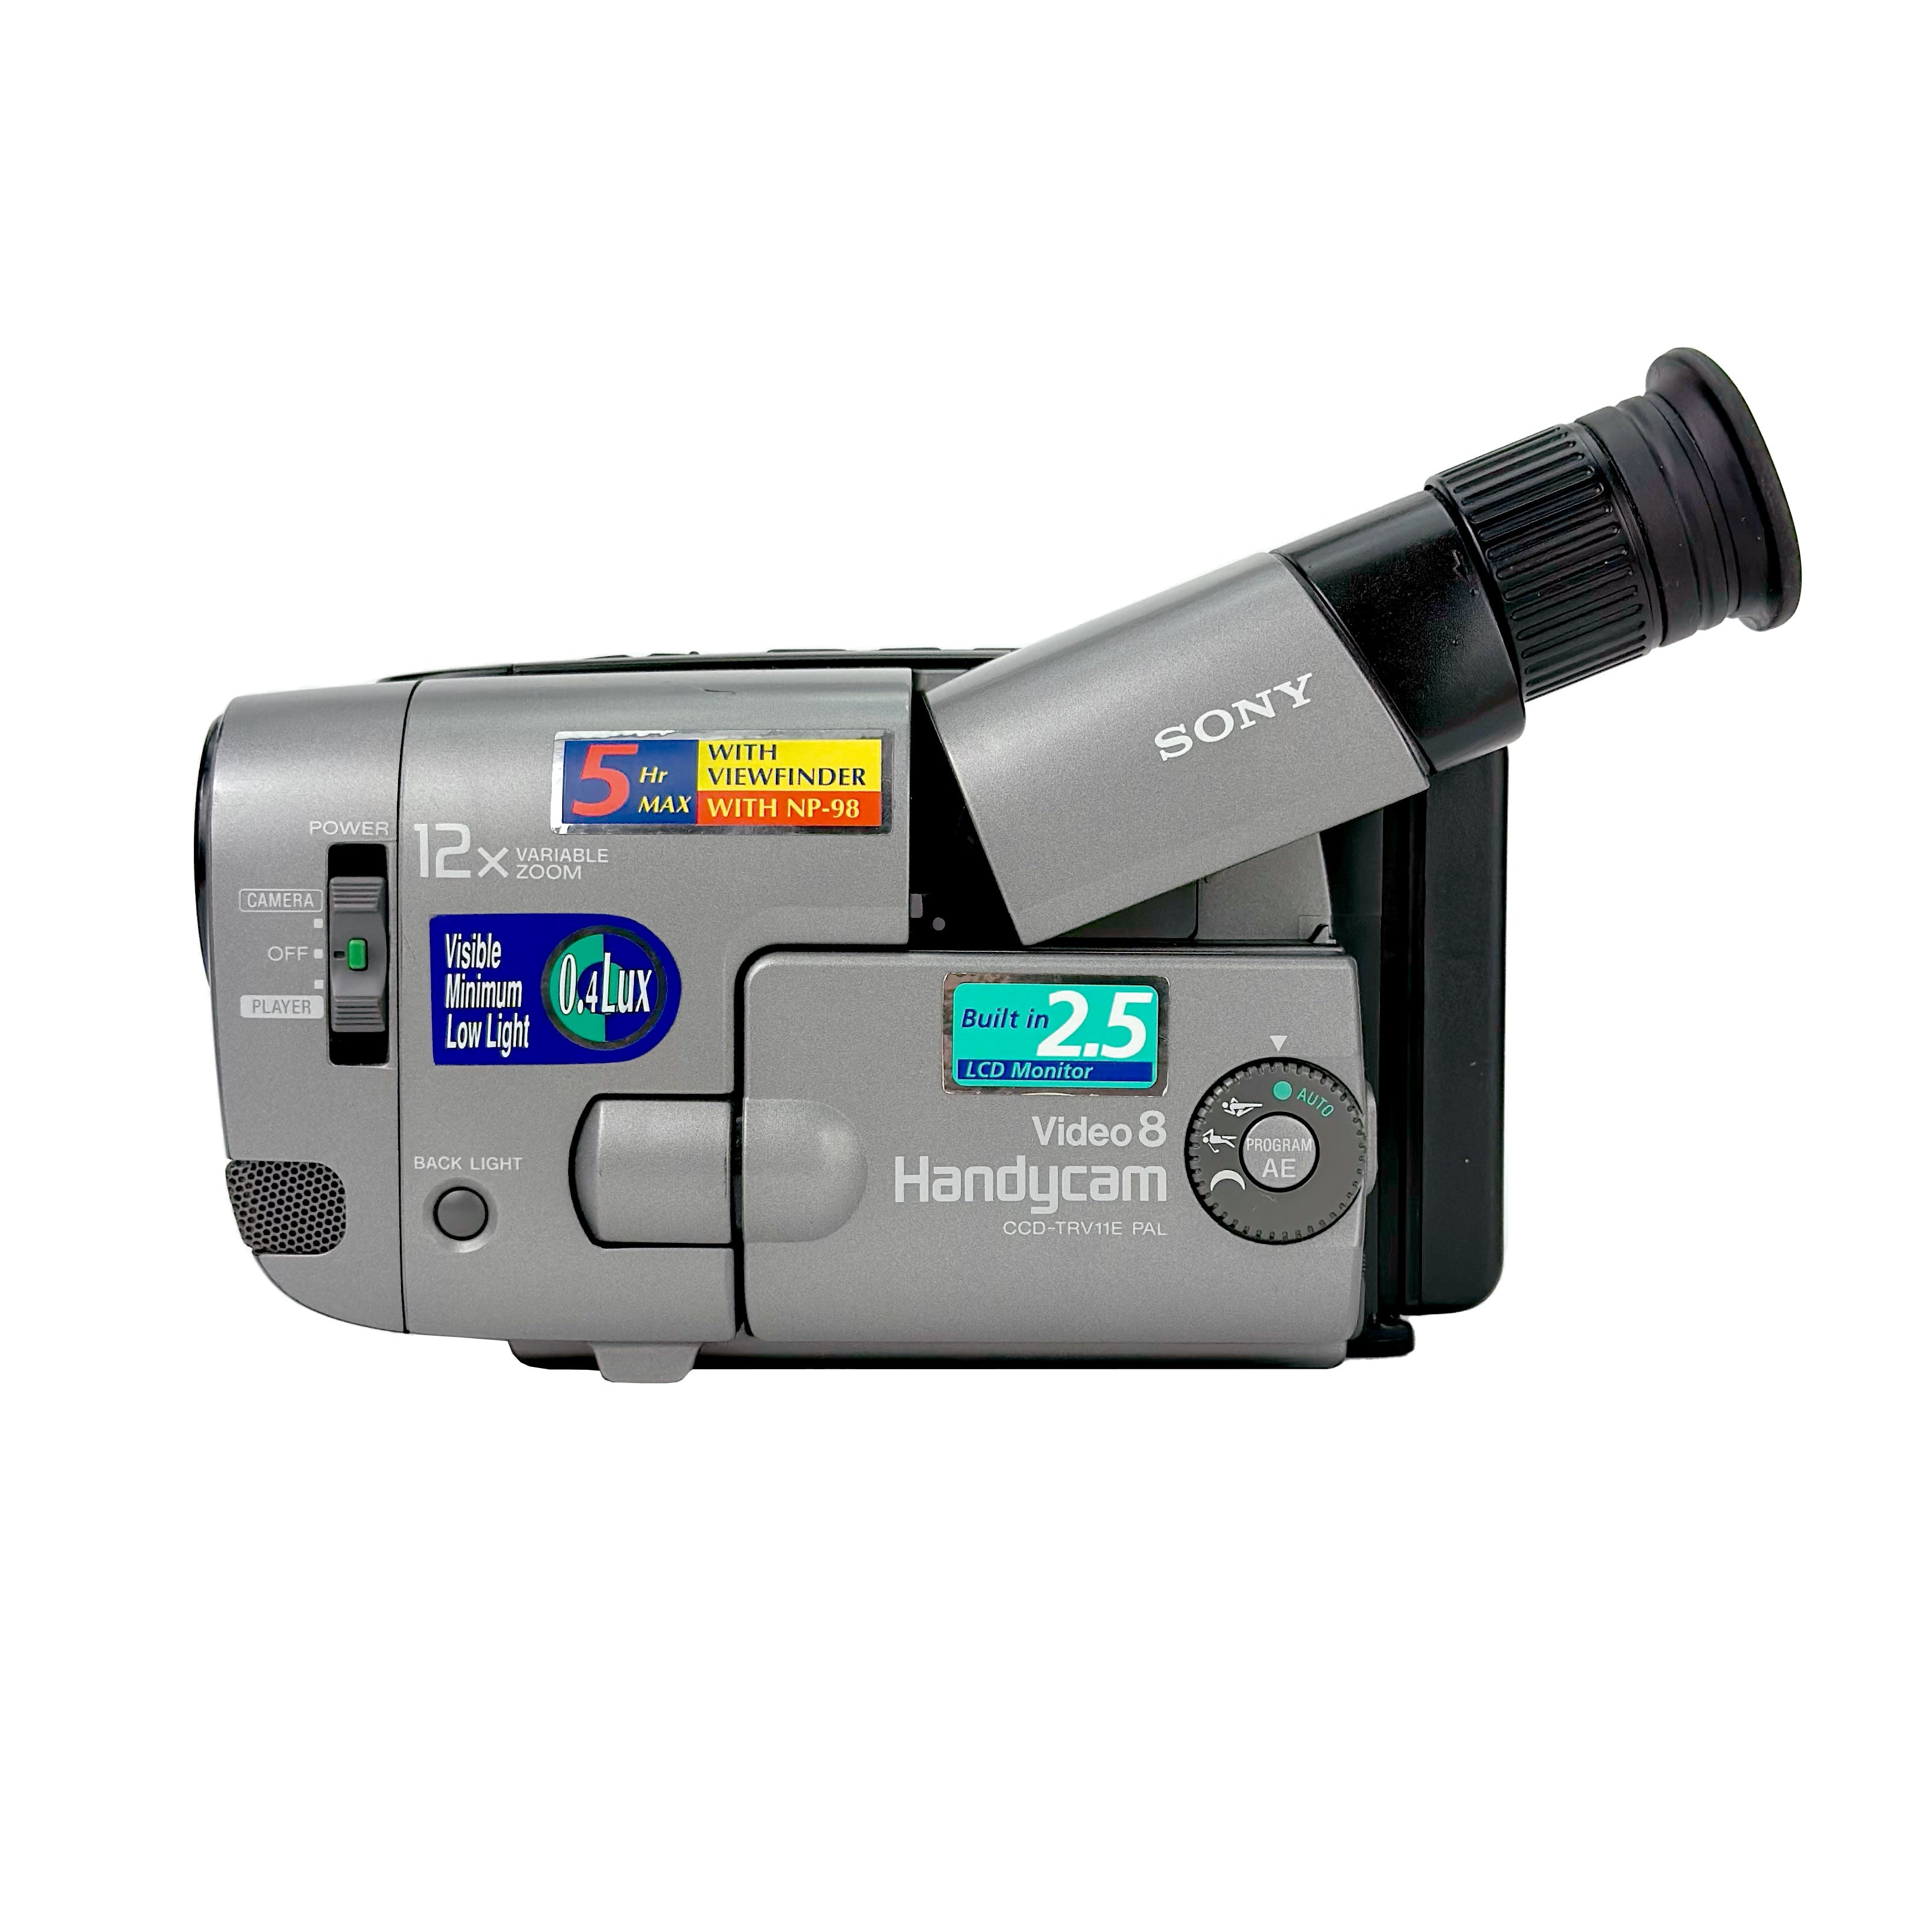 ソニー2.5液晶video8 Handycam-